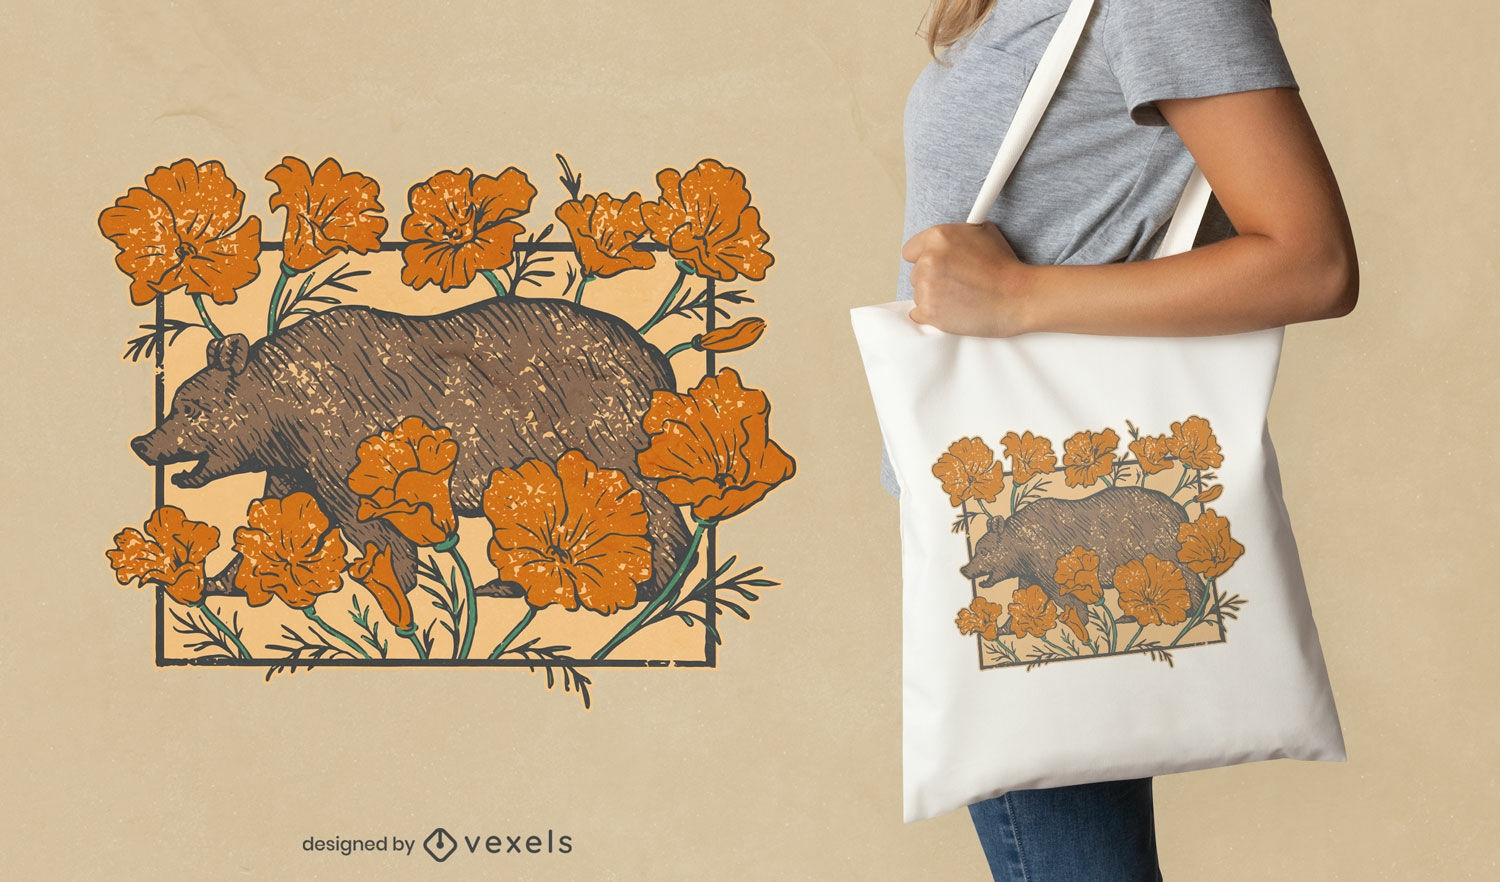 Diseño de tote bag de oso pardo con flores